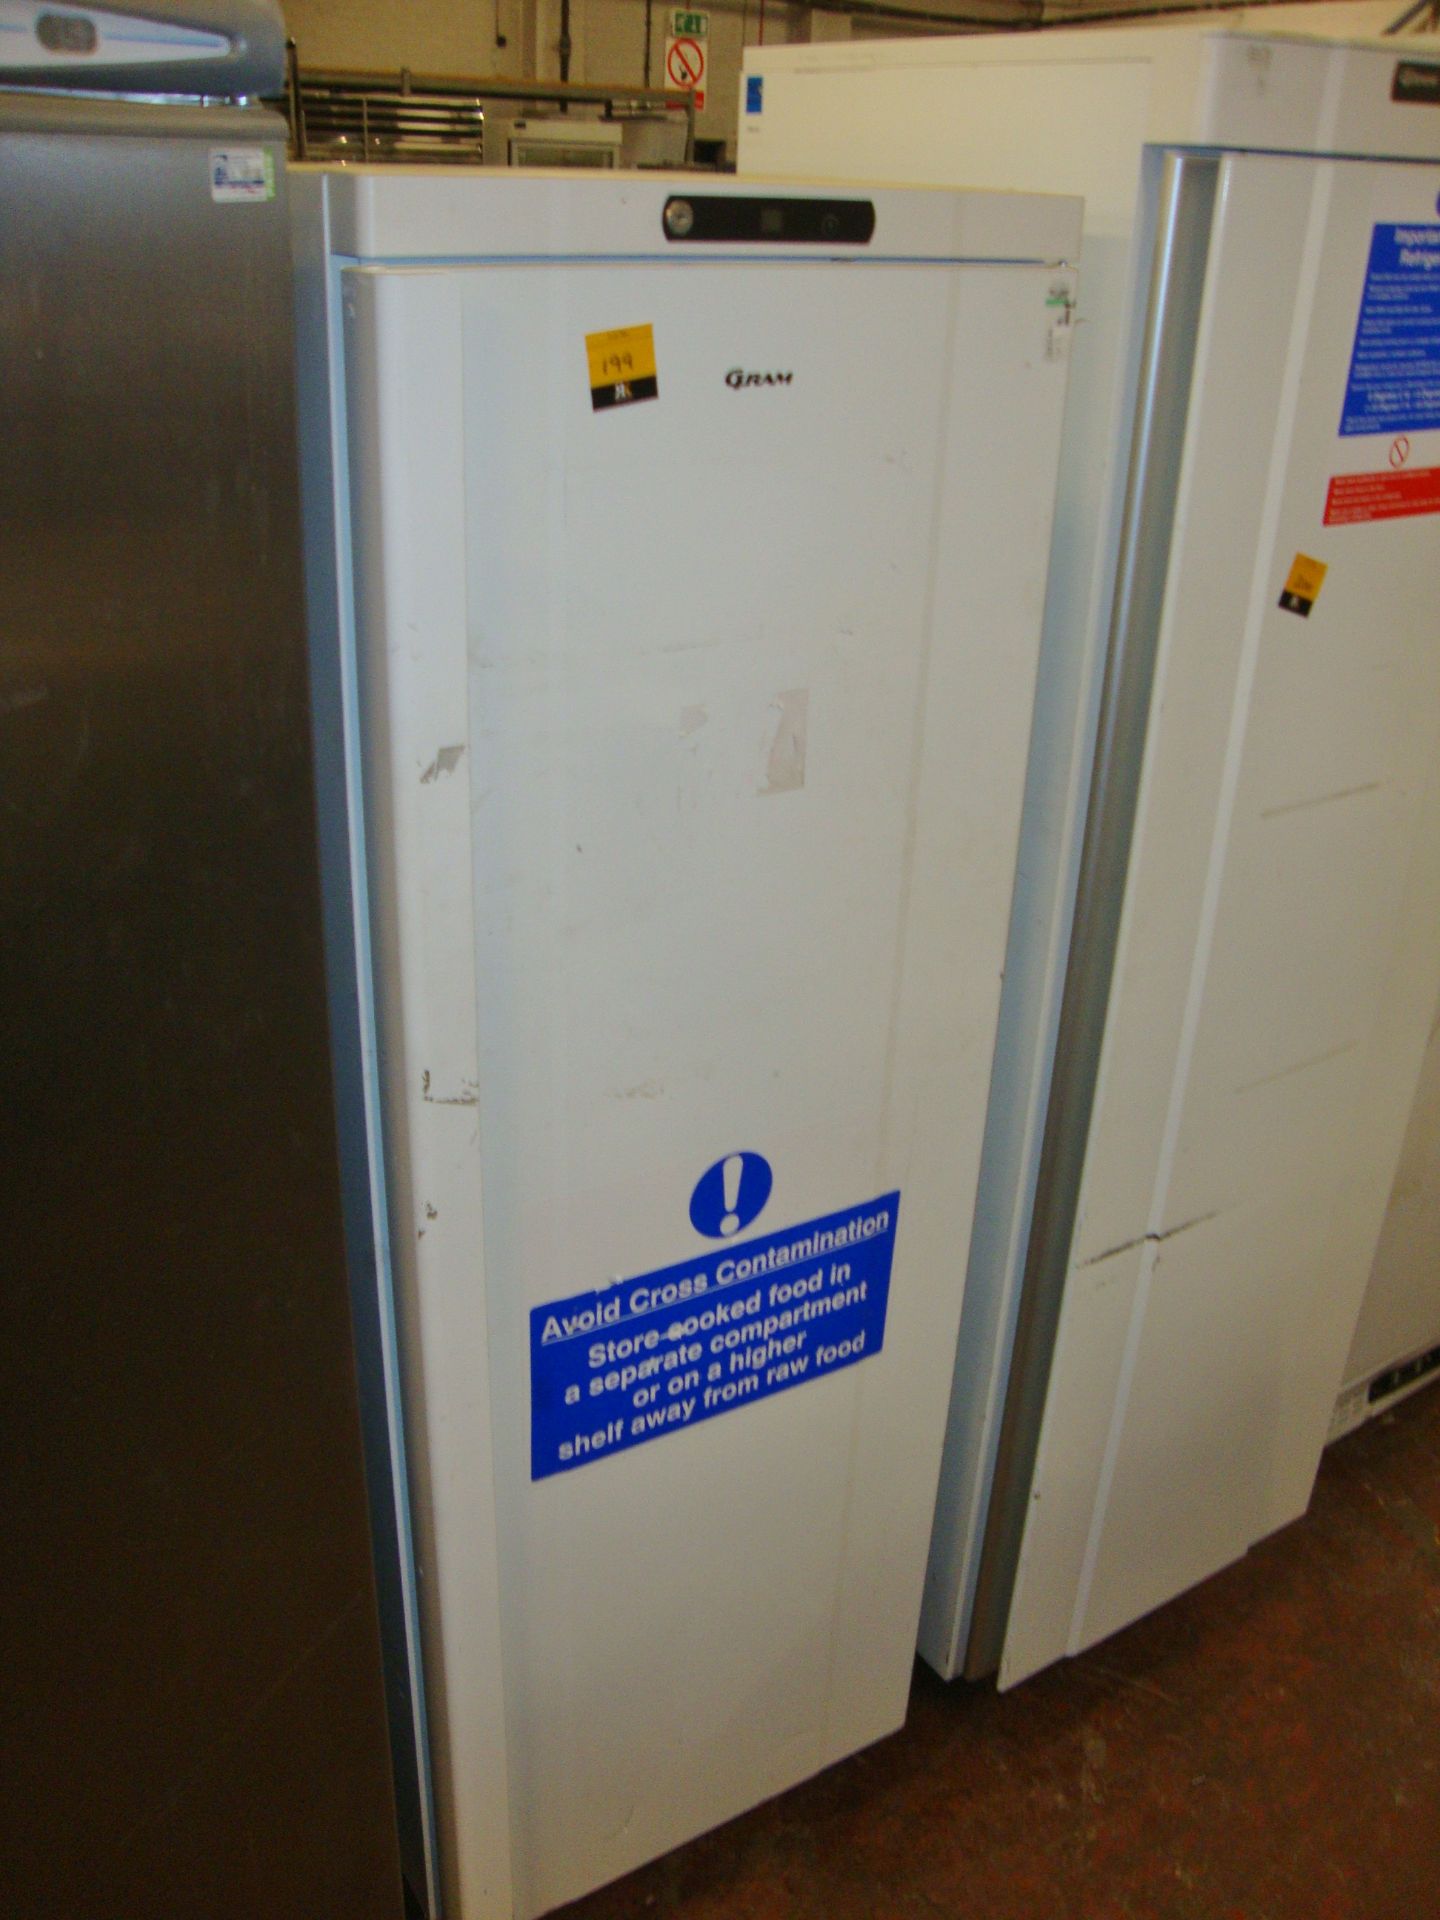 Gram K400 LUHC6W mobile tall fridge